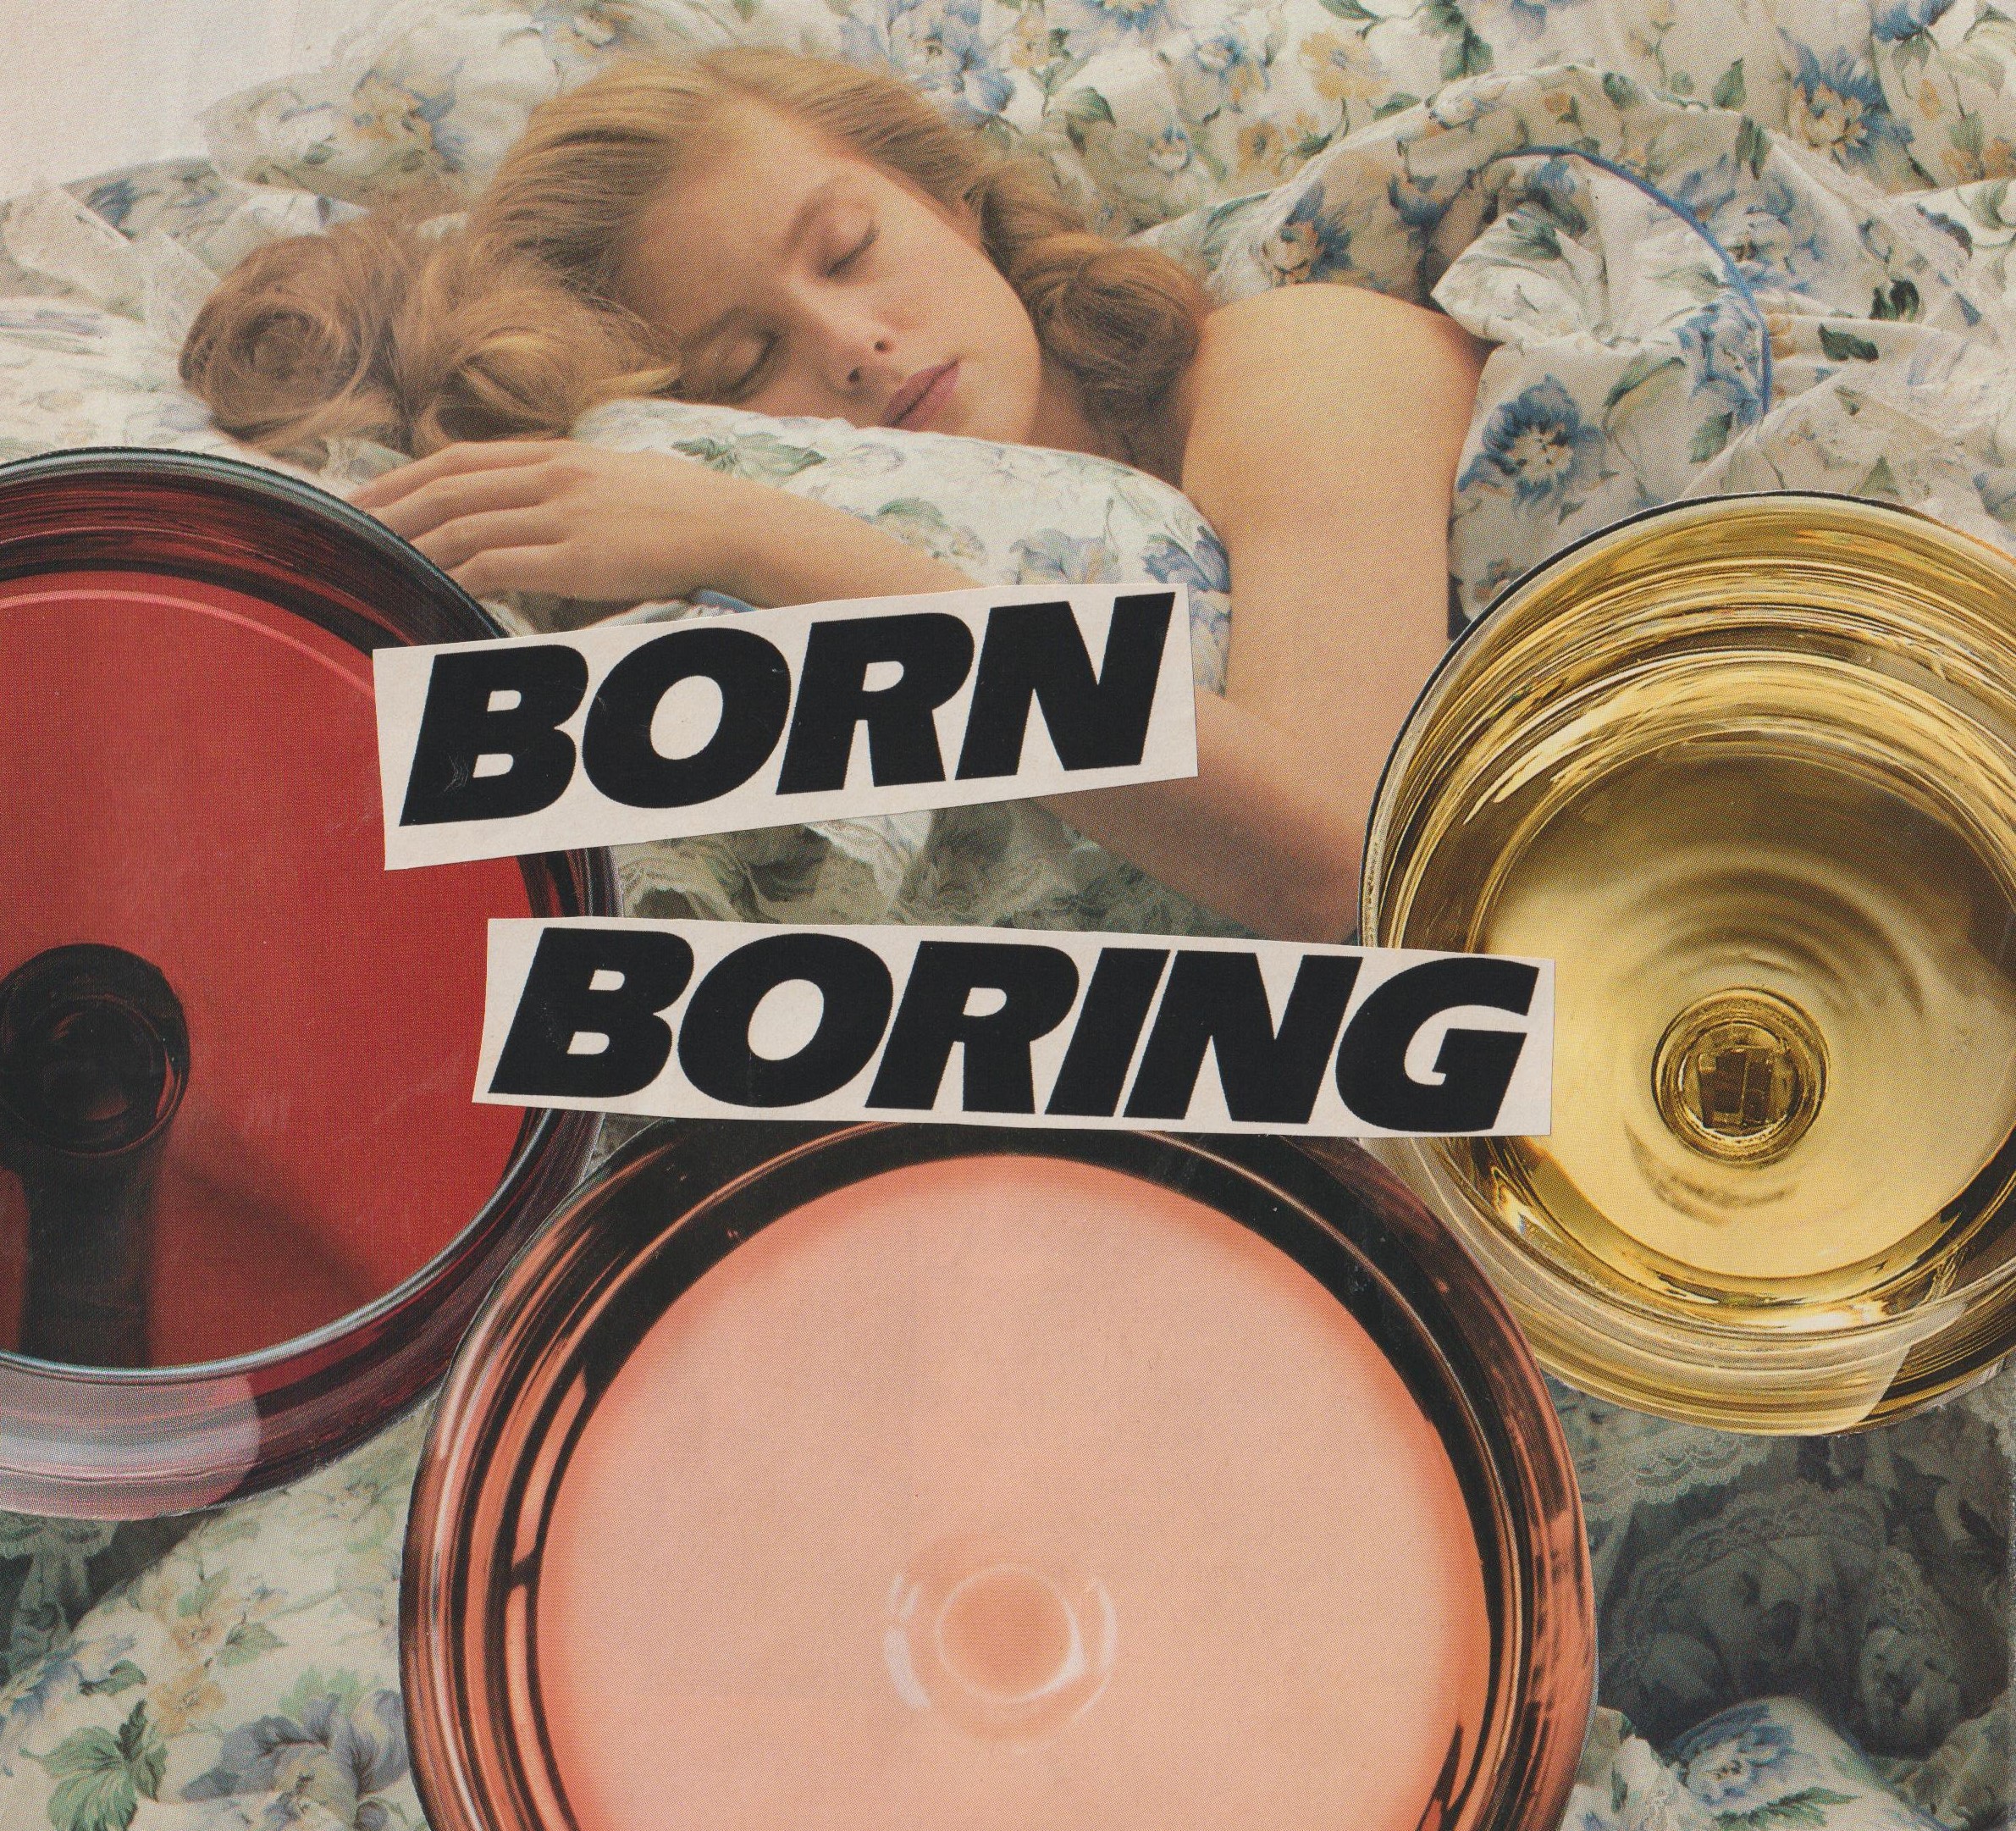 born boring